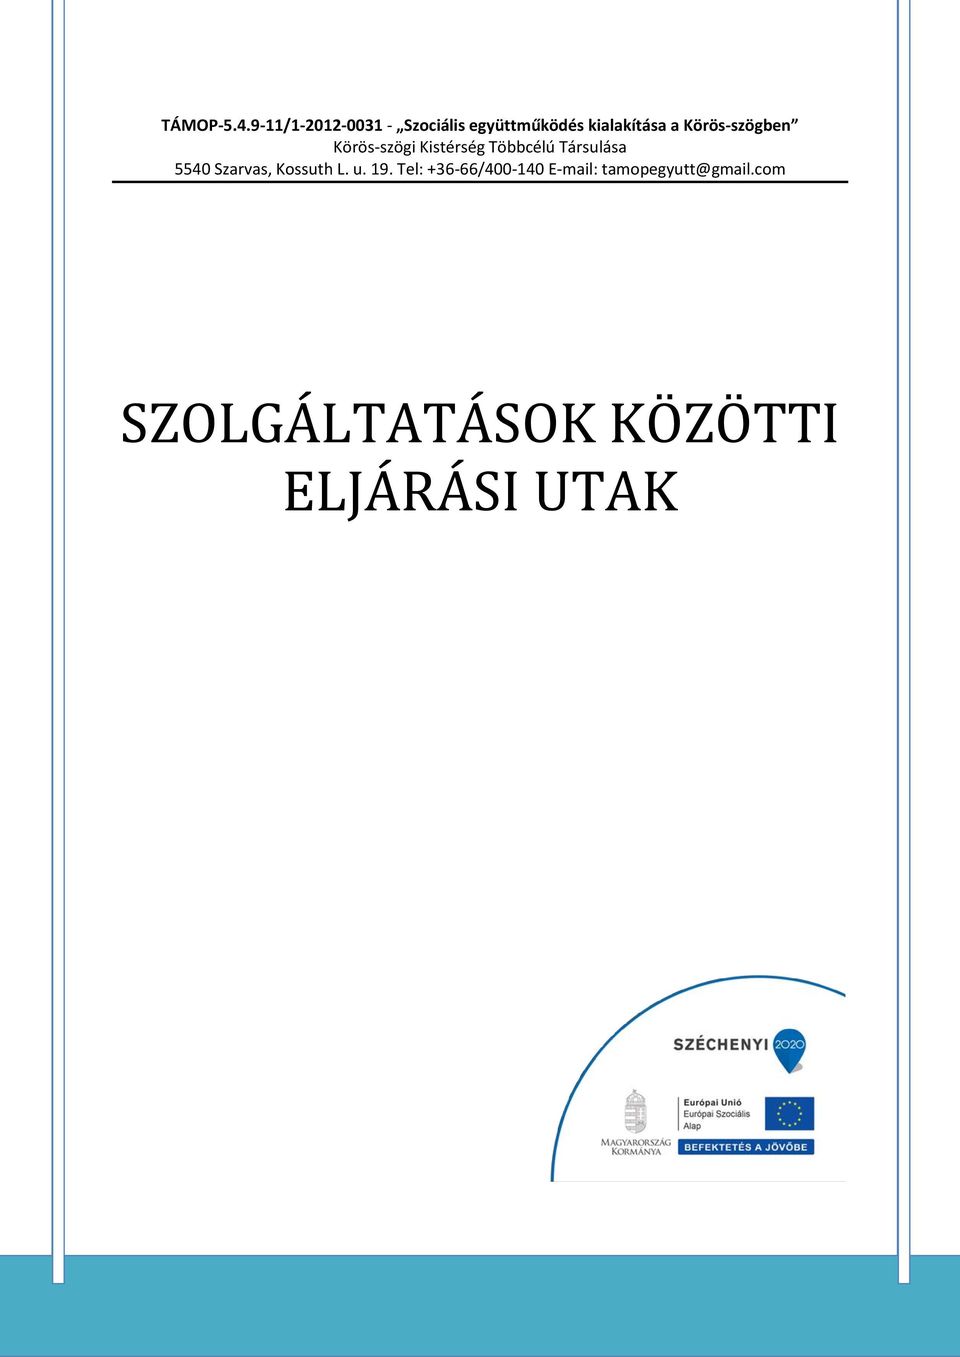 Körös-szögben Körös-szögi Kistérség Többcélú Társulása 5540